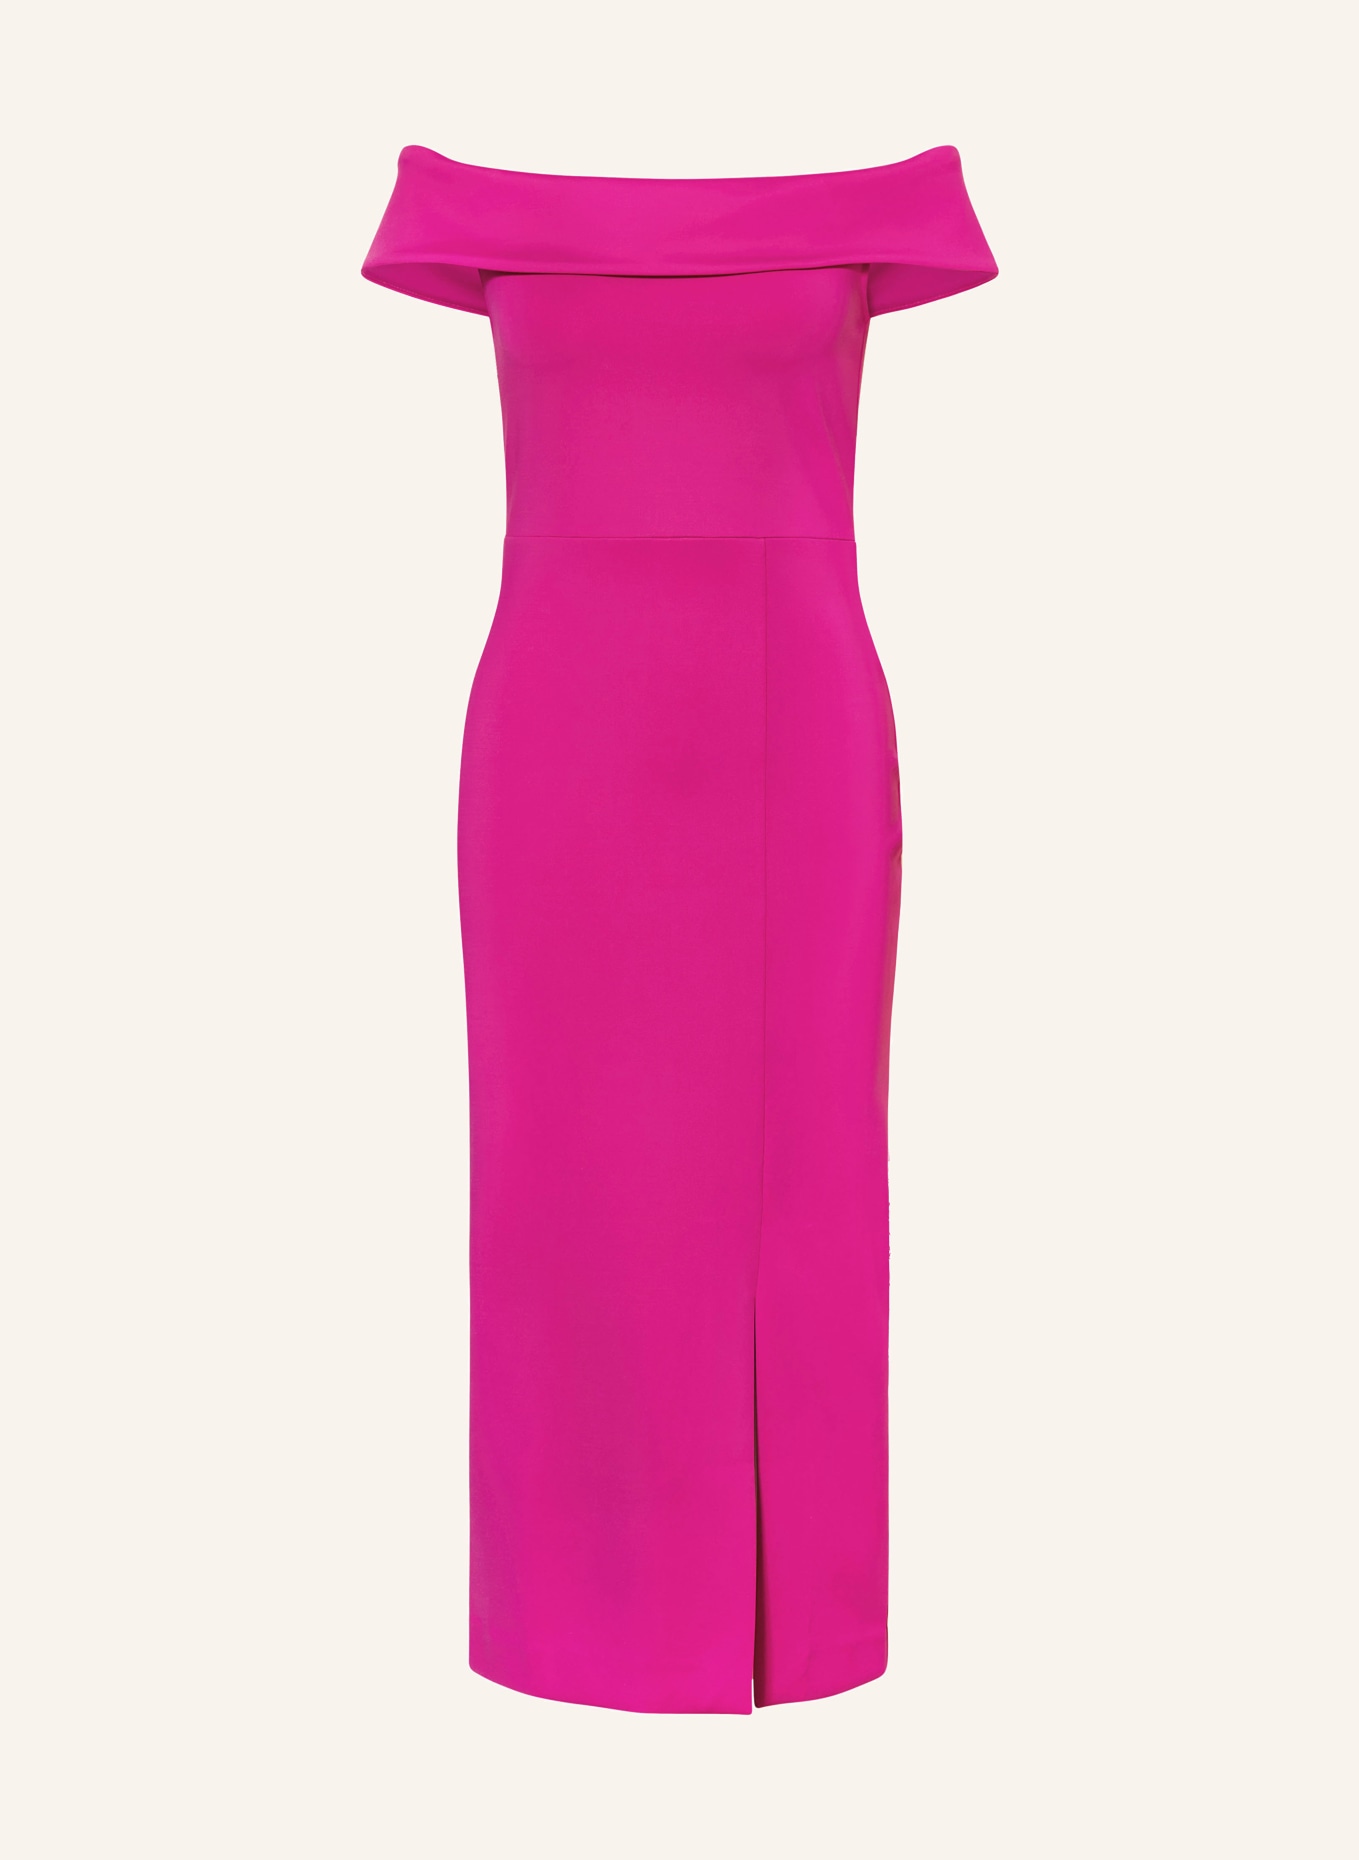 TED BAKER Dress BARDOT, Color: PINK (Image 1)